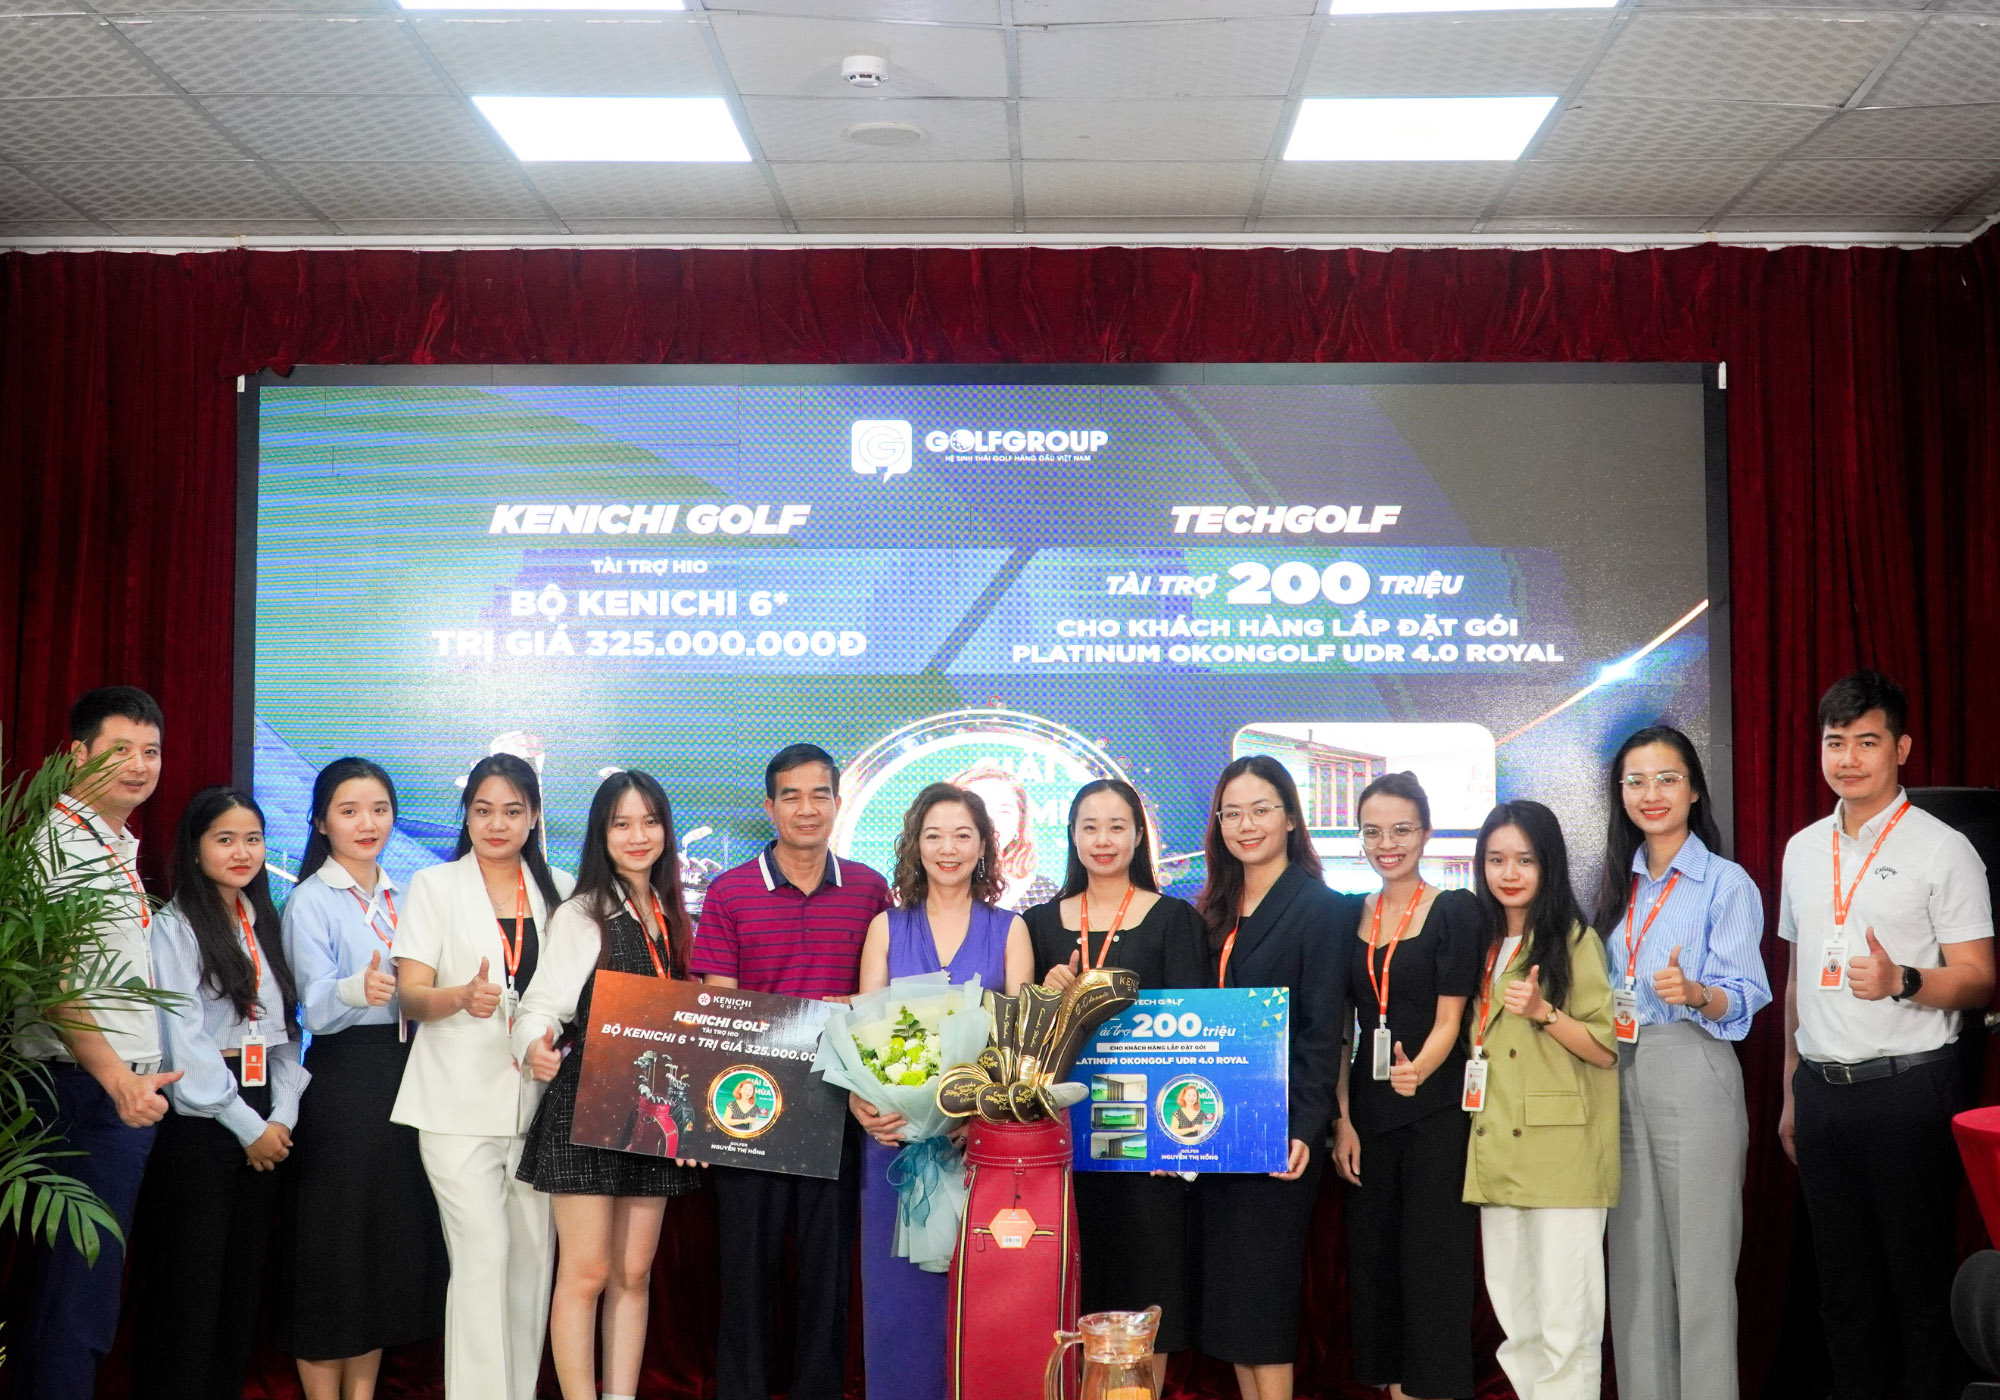 Chúc mừng giải golf thành công tốt đẹp và golfer Nguyễn Thị Hồng với giải HIO trị giá 525 triệu đồng